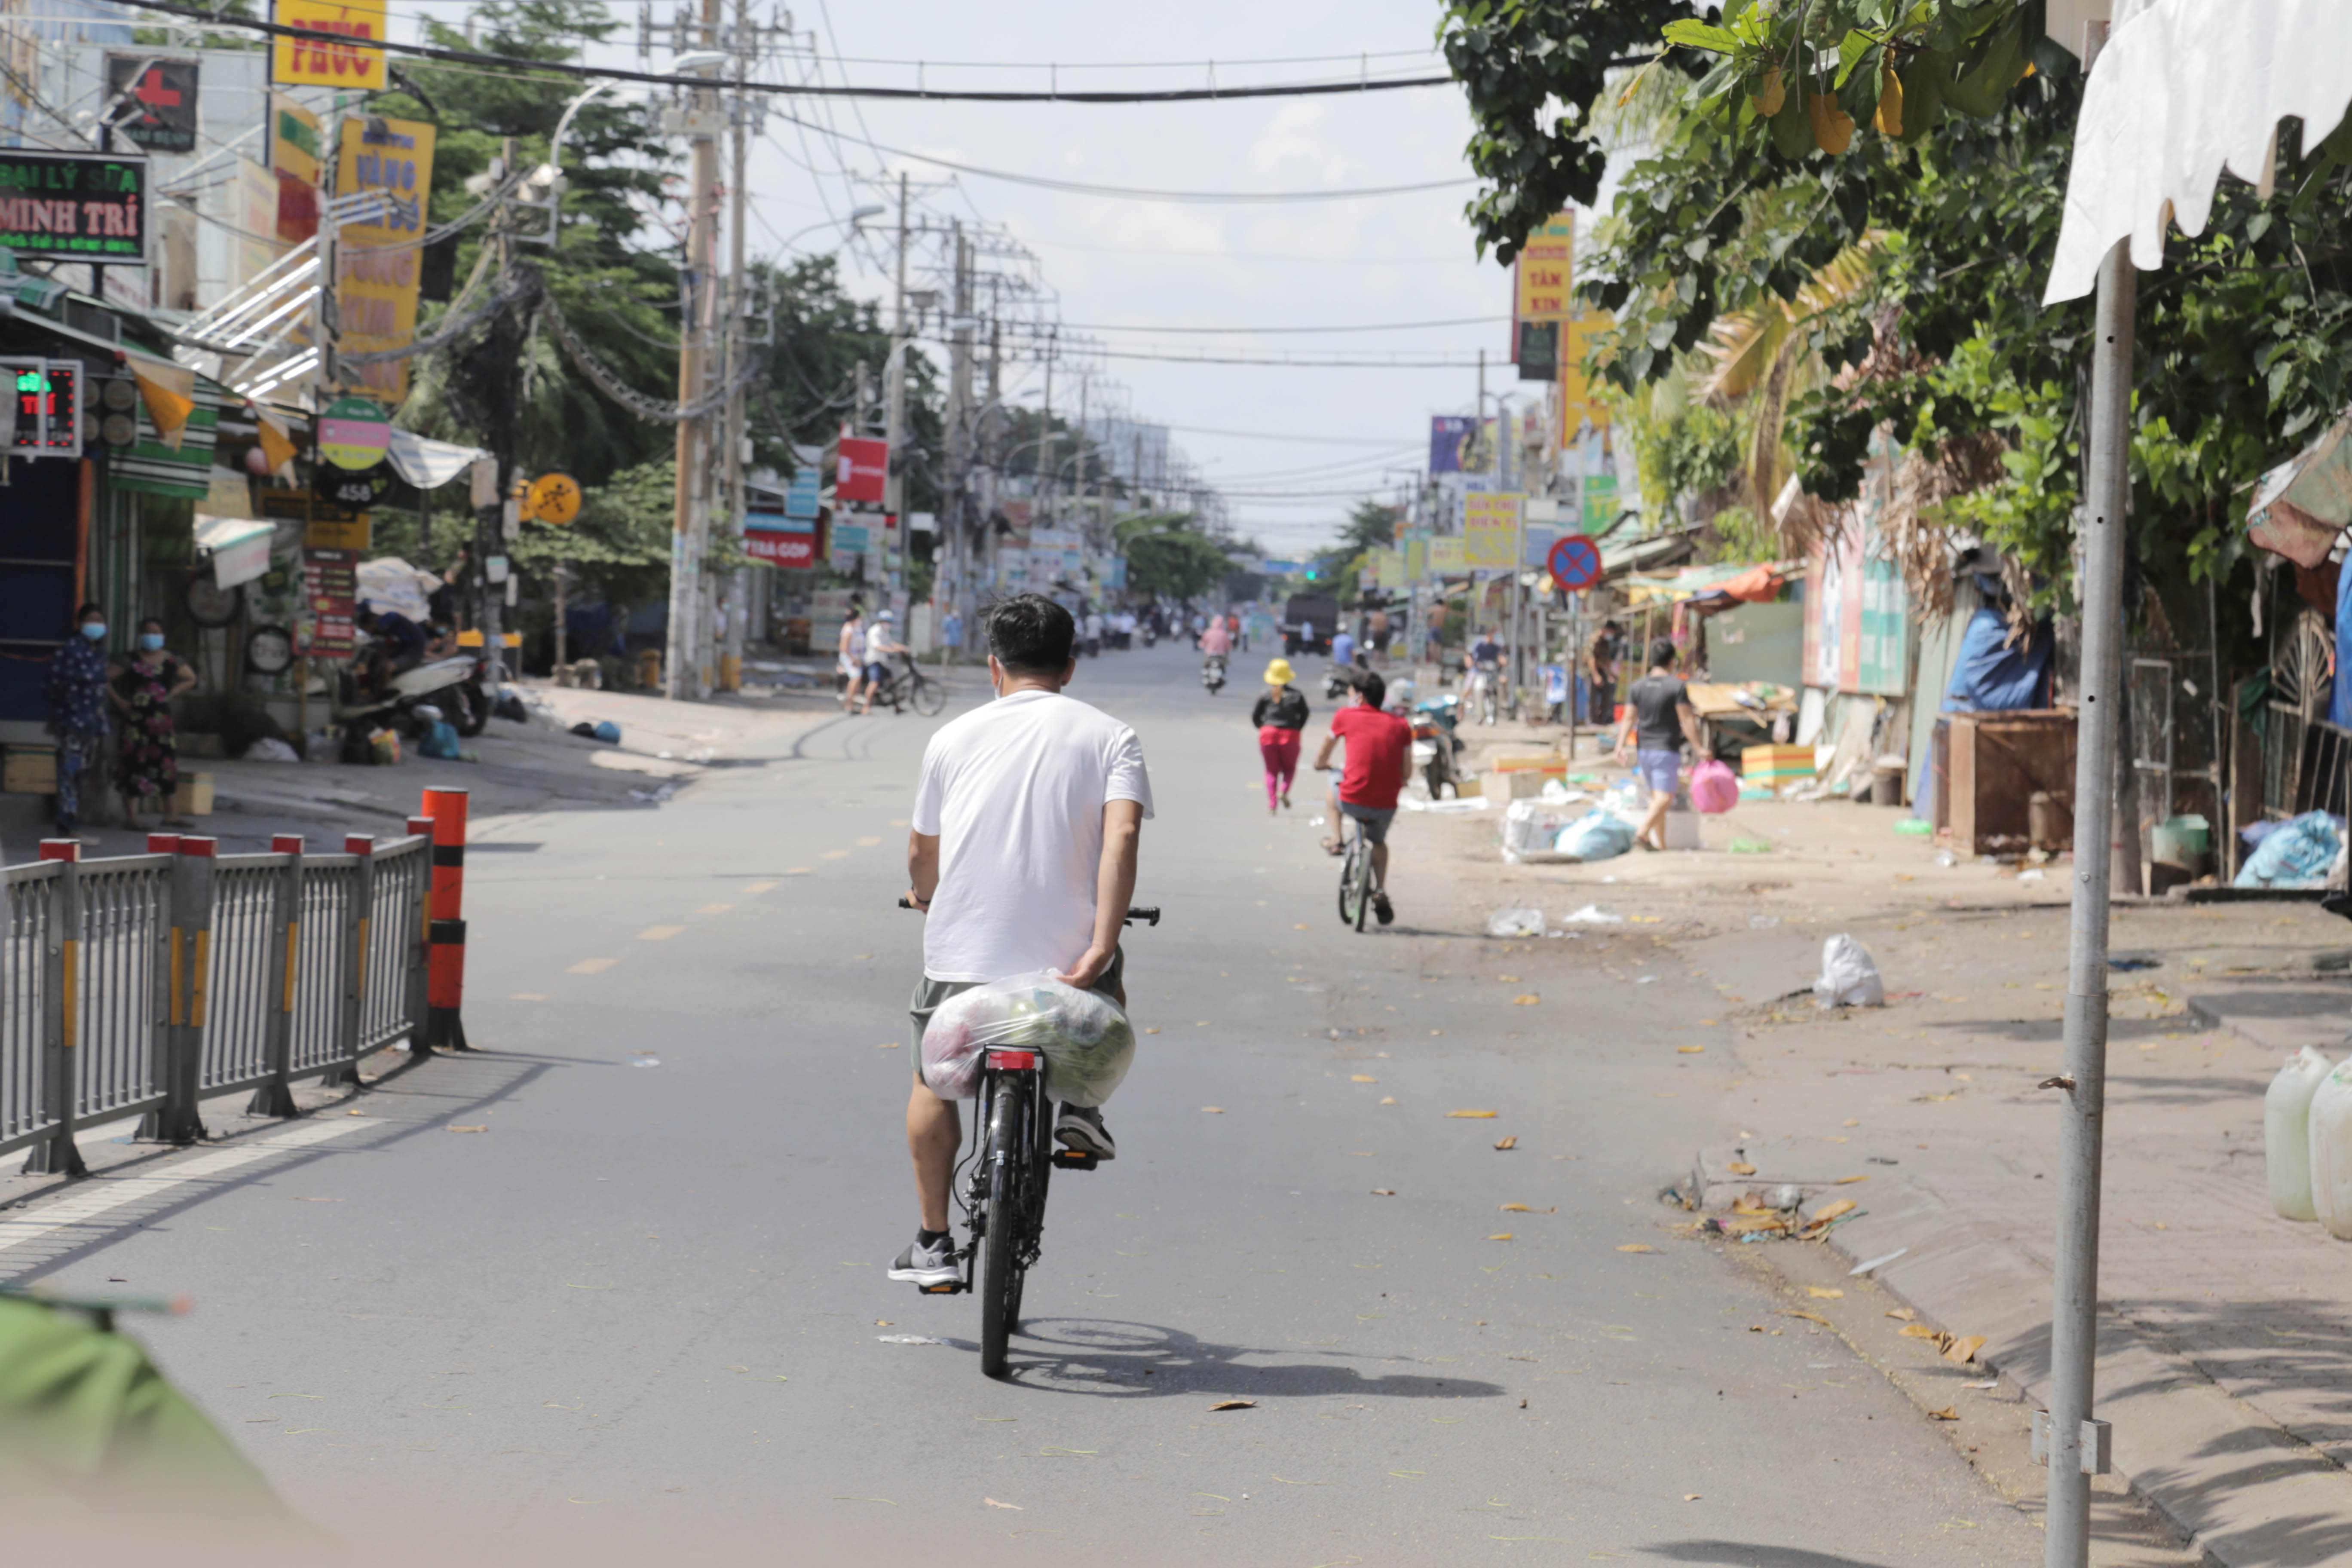 Toàn cảnh phong tỏa “nội bất xuất, ngoại bất nhập” tại 3 khu phố ở Bình Tân - 12